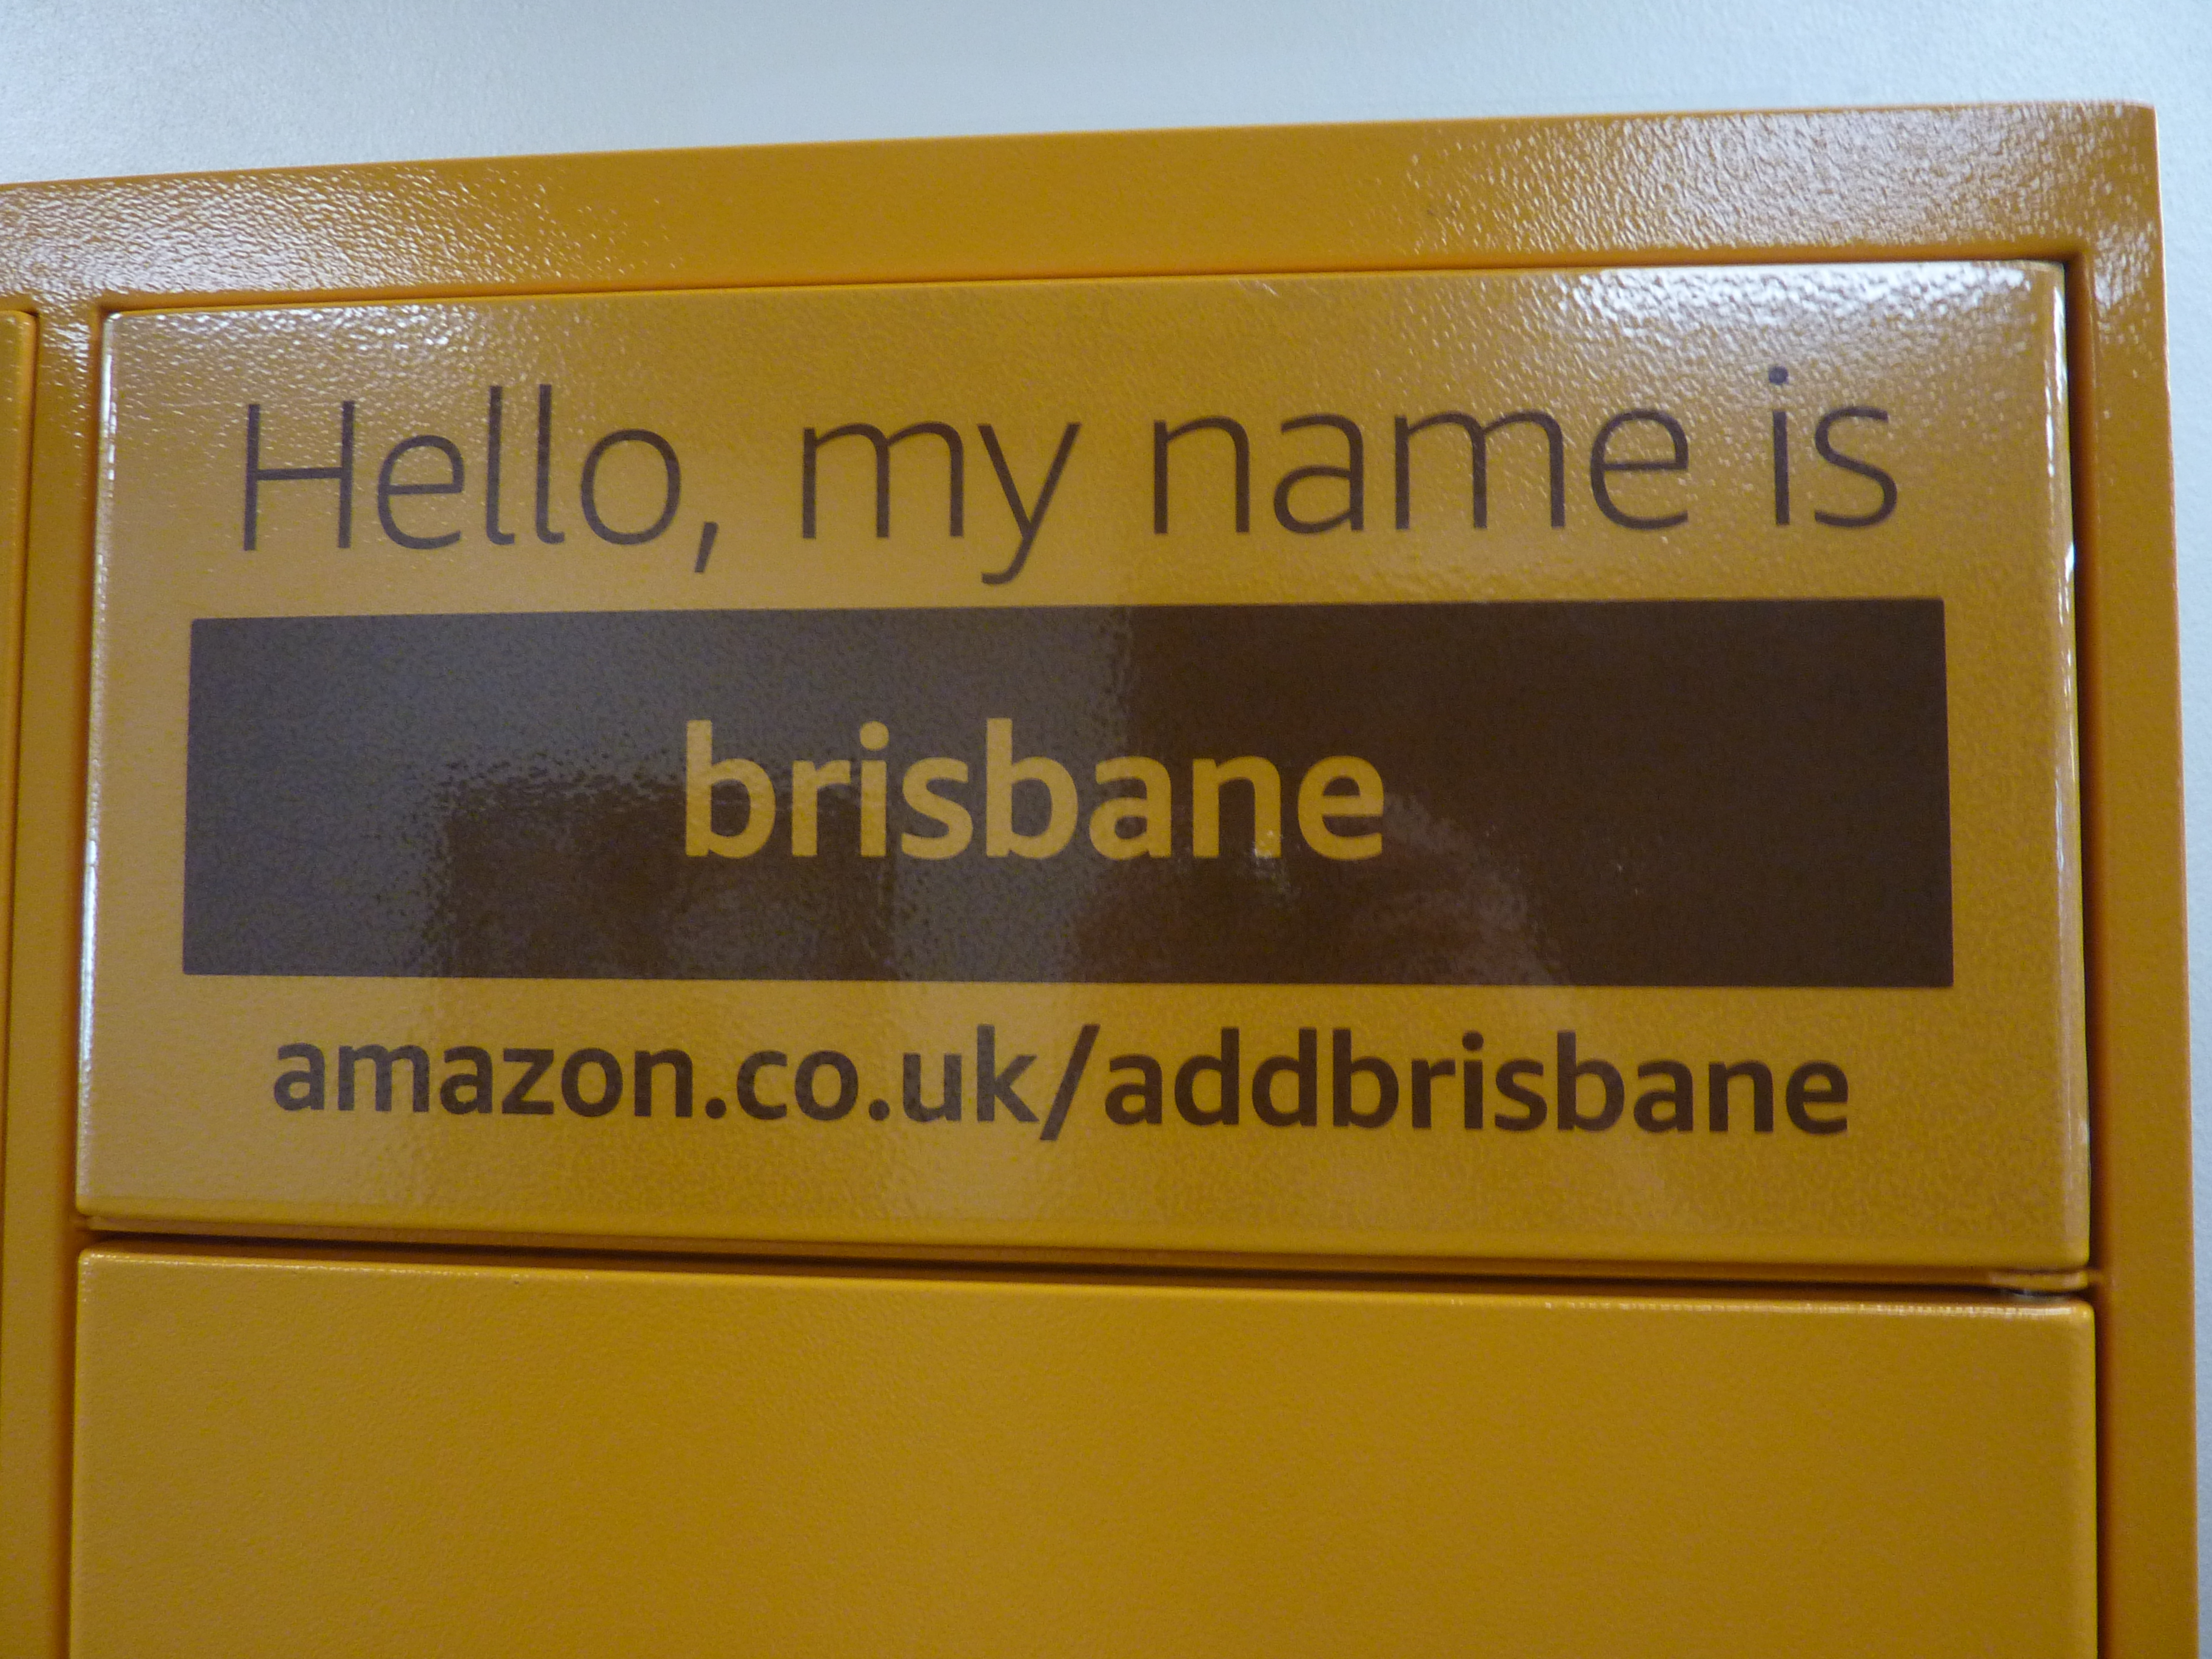 Hello my name is brisbane